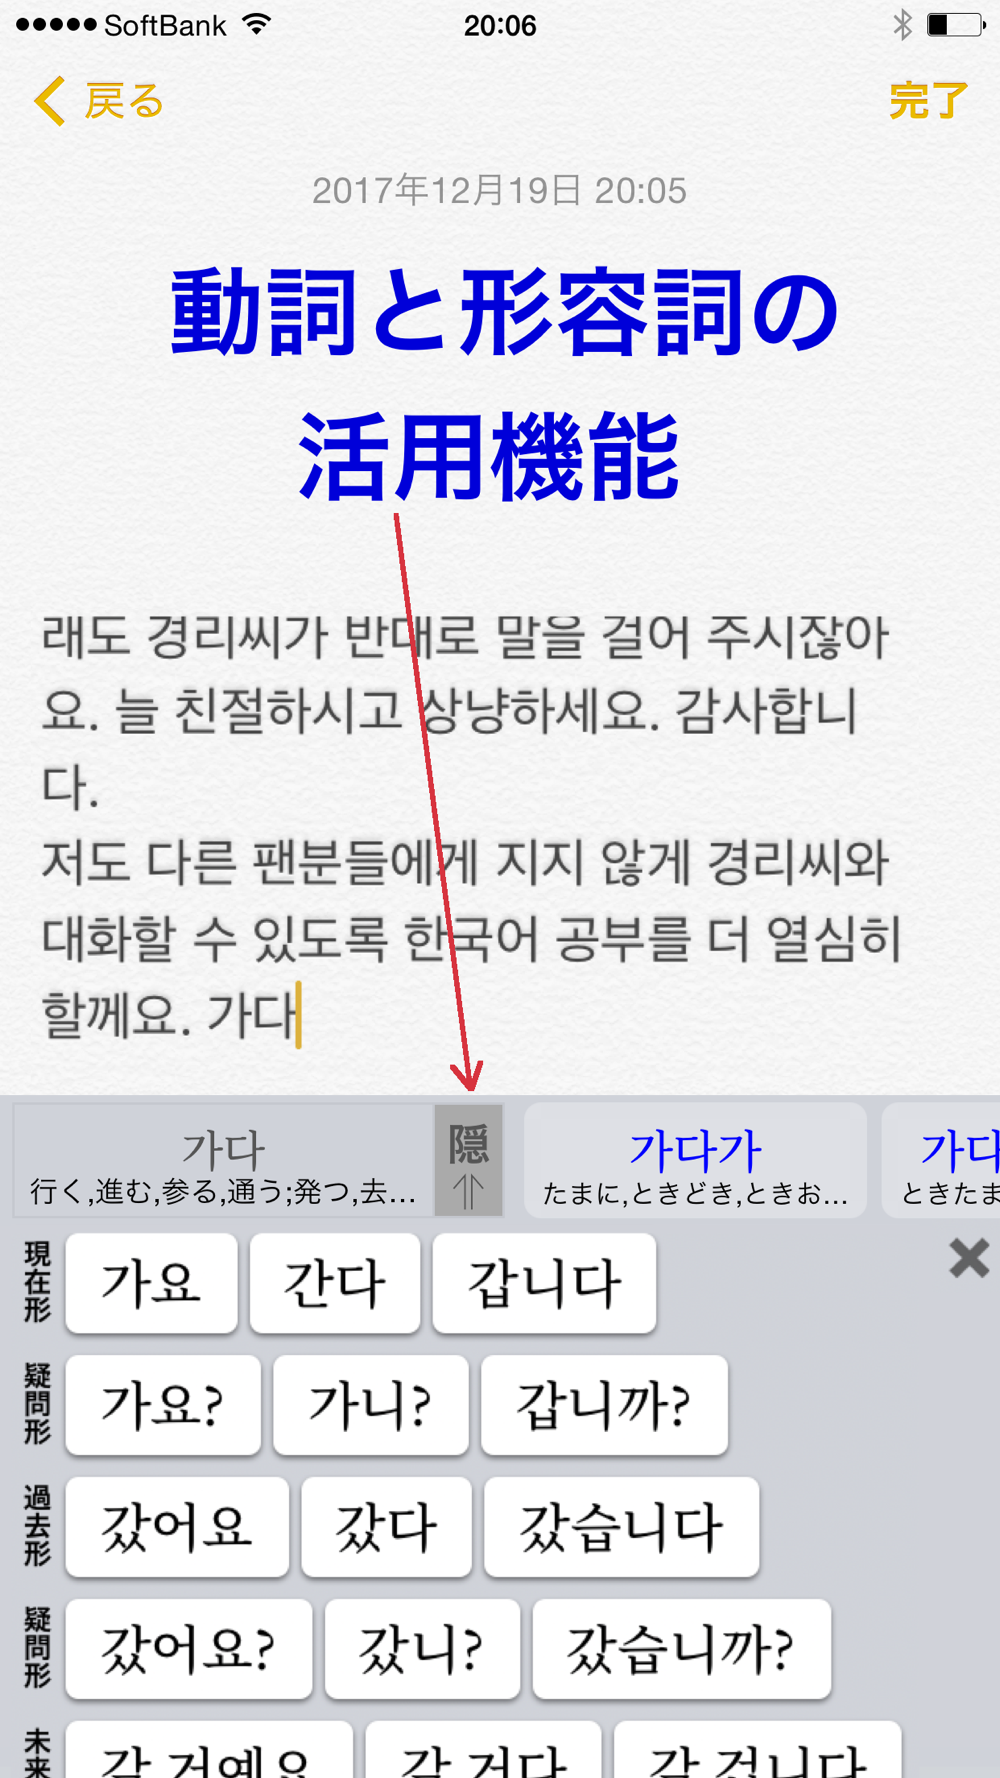 ハングル 辞書付き韓国語キーボード Download App For Iphone Steprimo Com